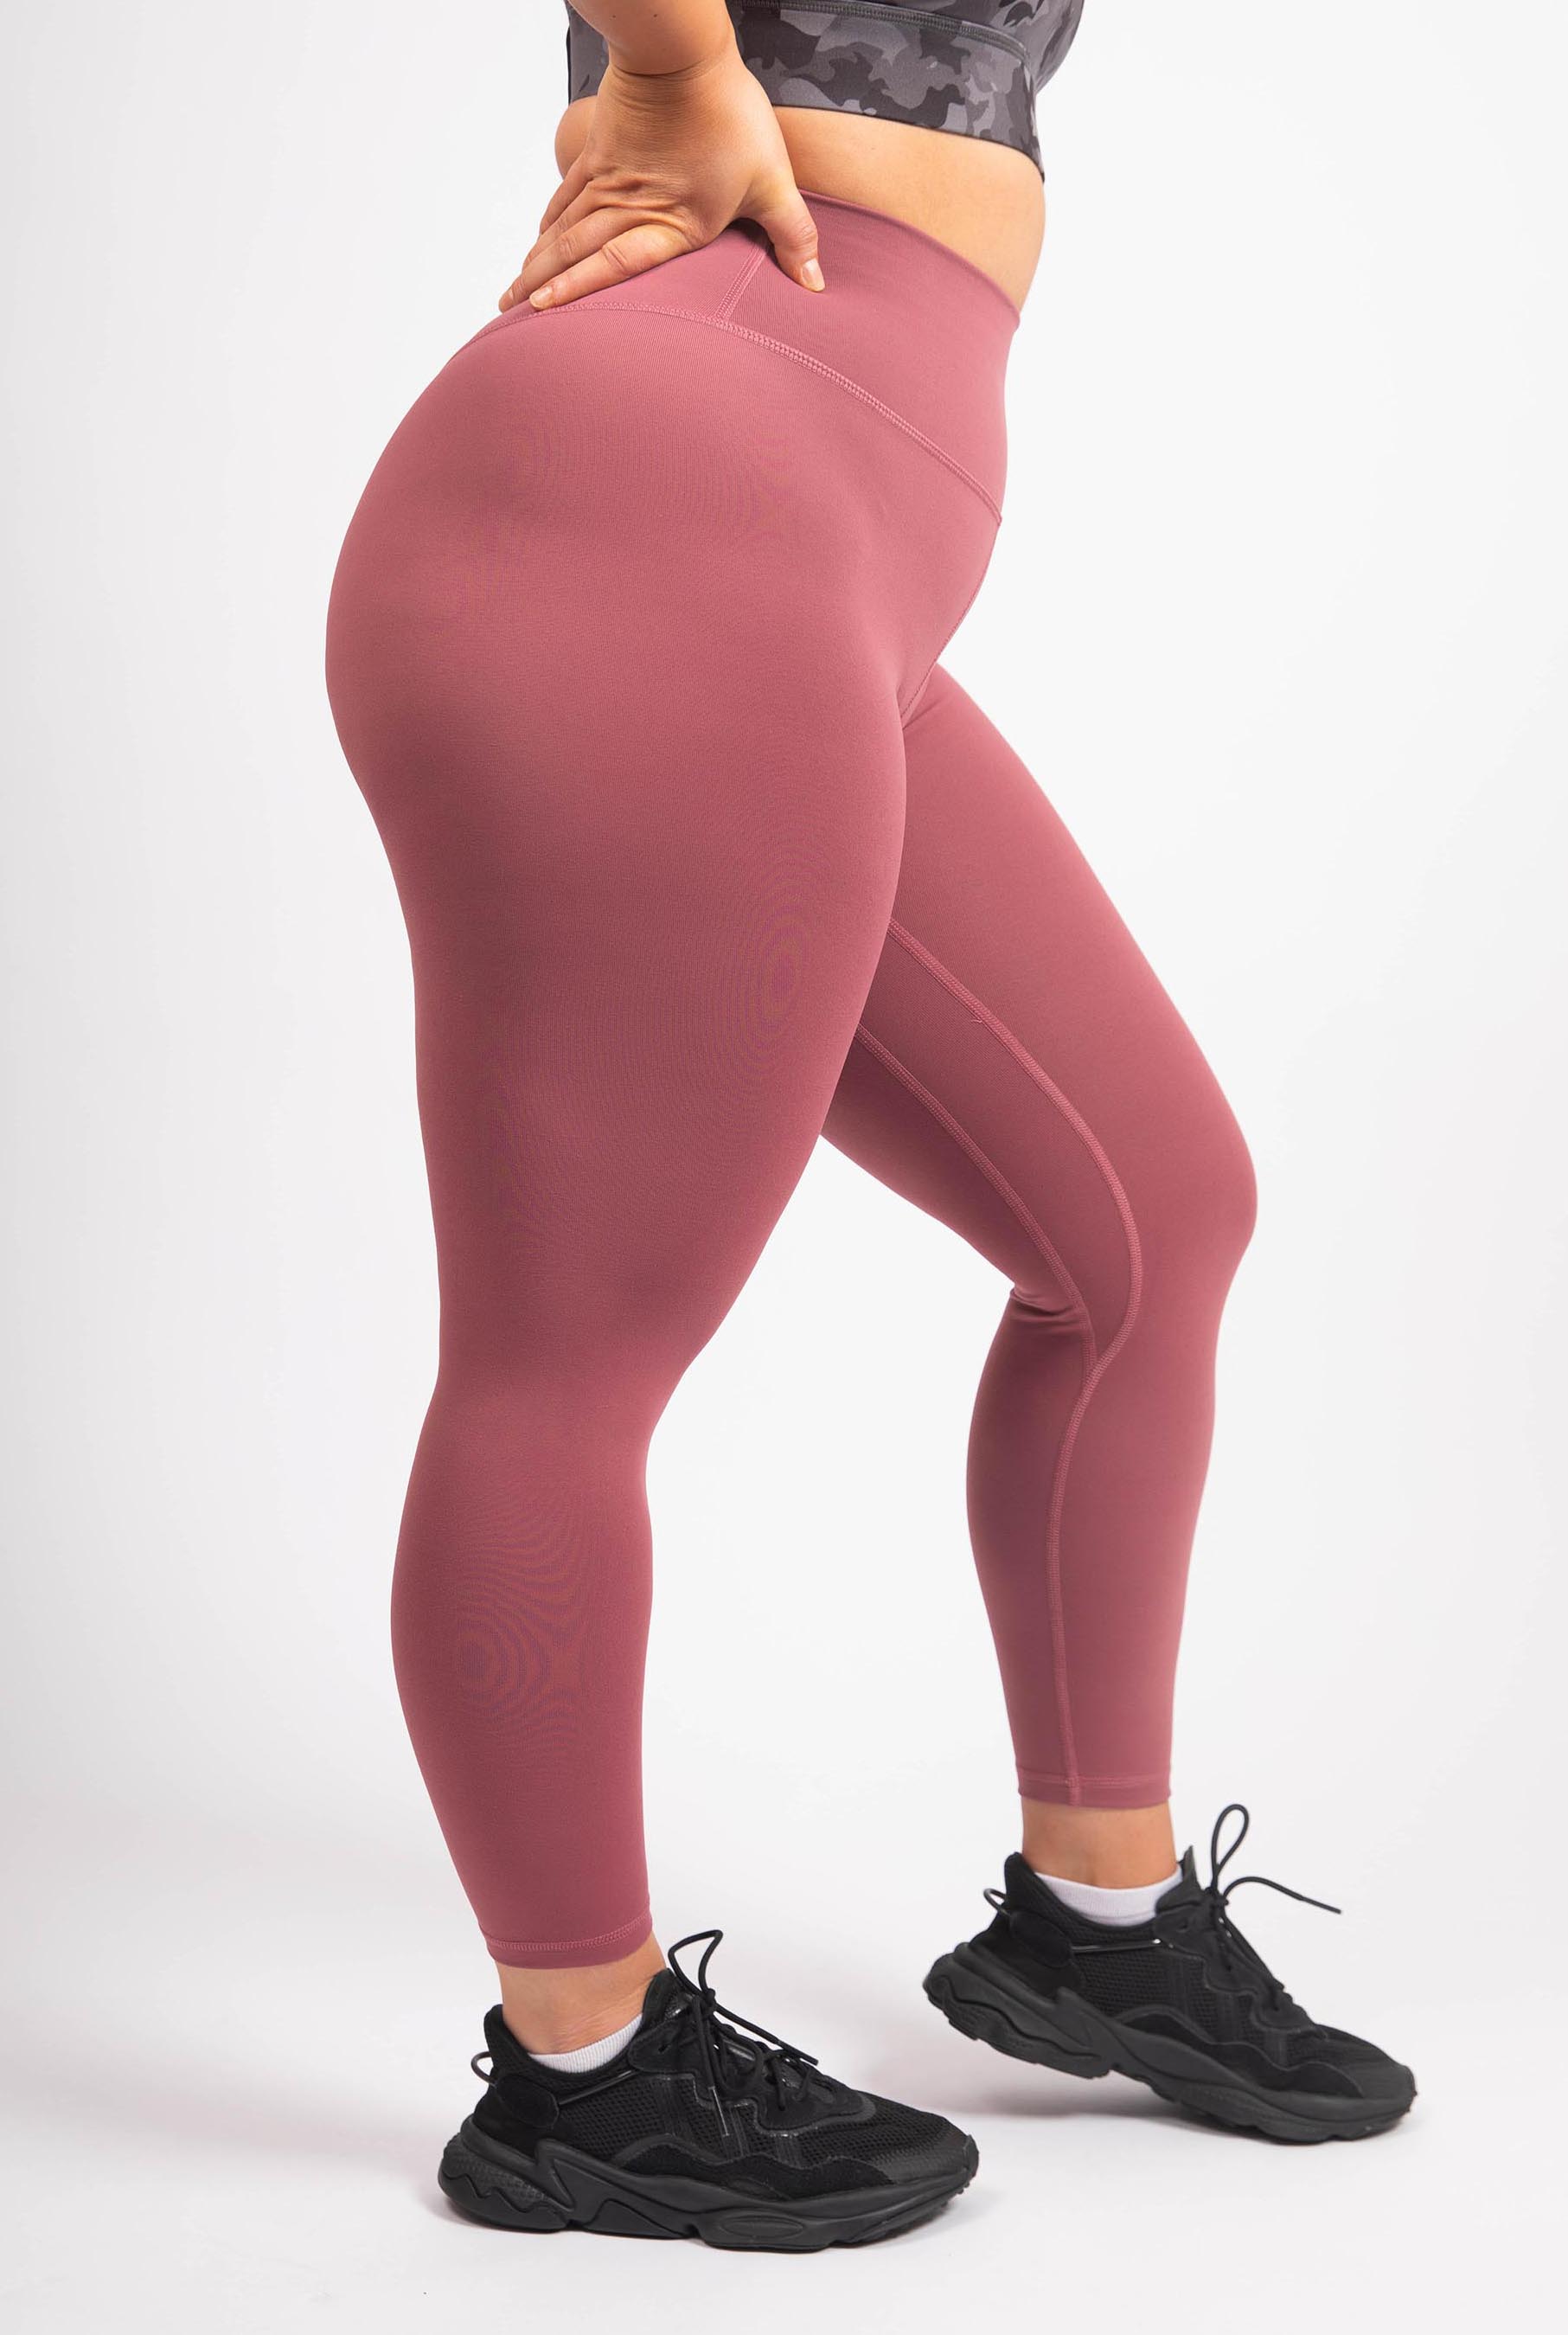 The Senara Legging - Rose Pink - Avo Activewear Ltd